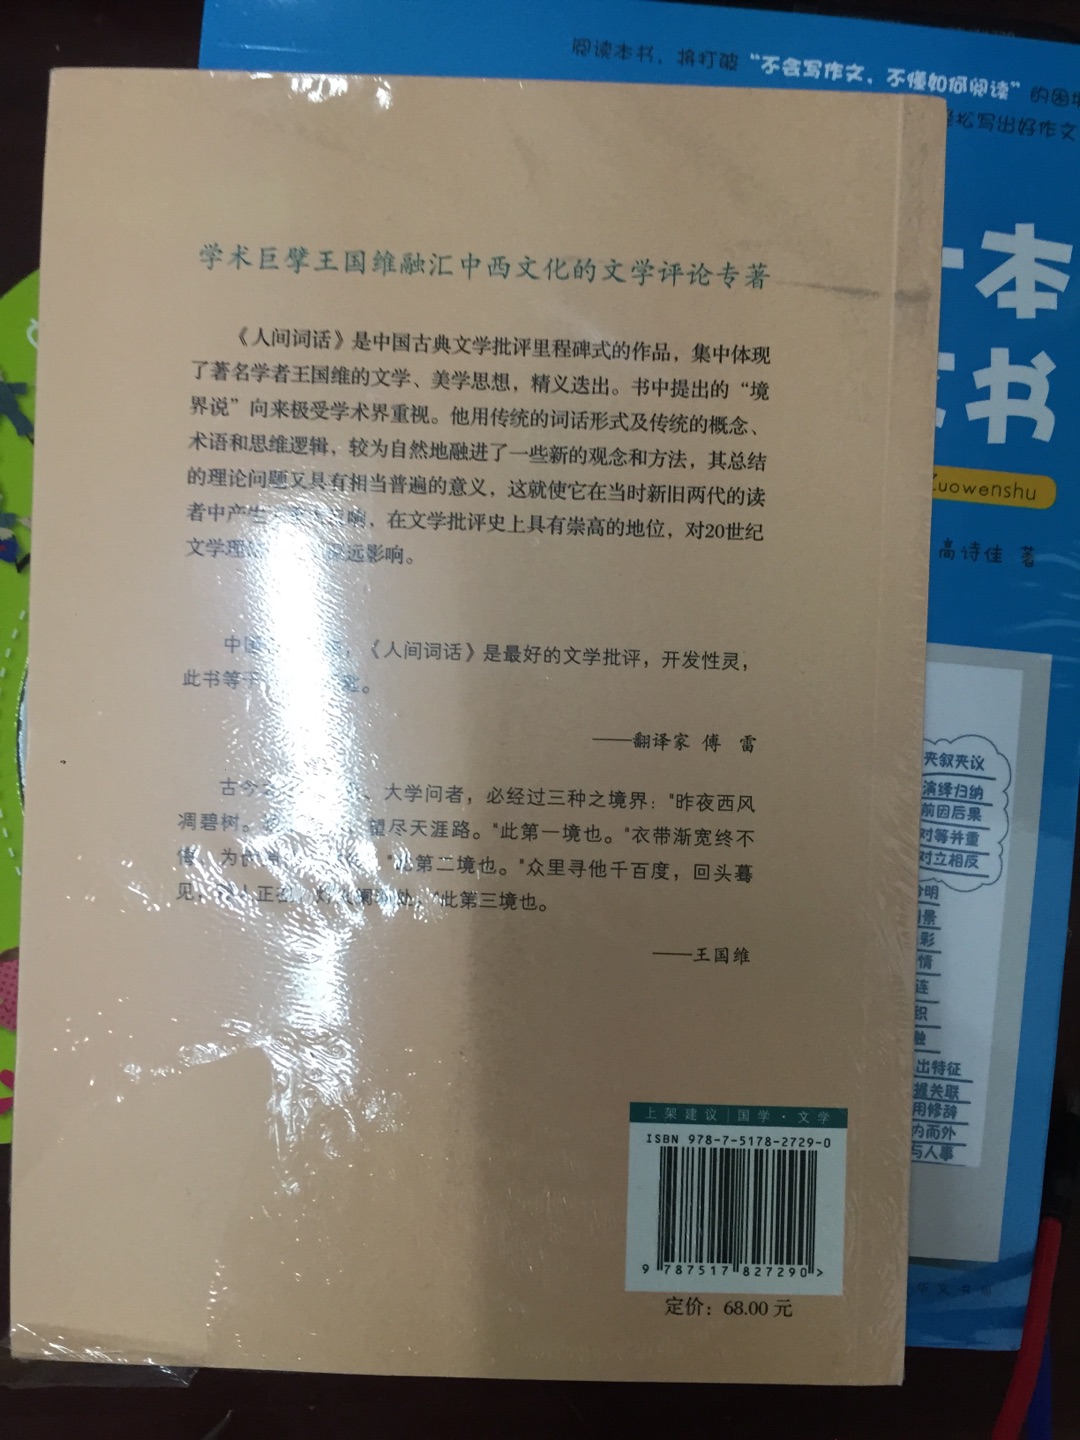 最美中国古诗词。这本书很多人推荐，那就有值得看的理由。学习中。